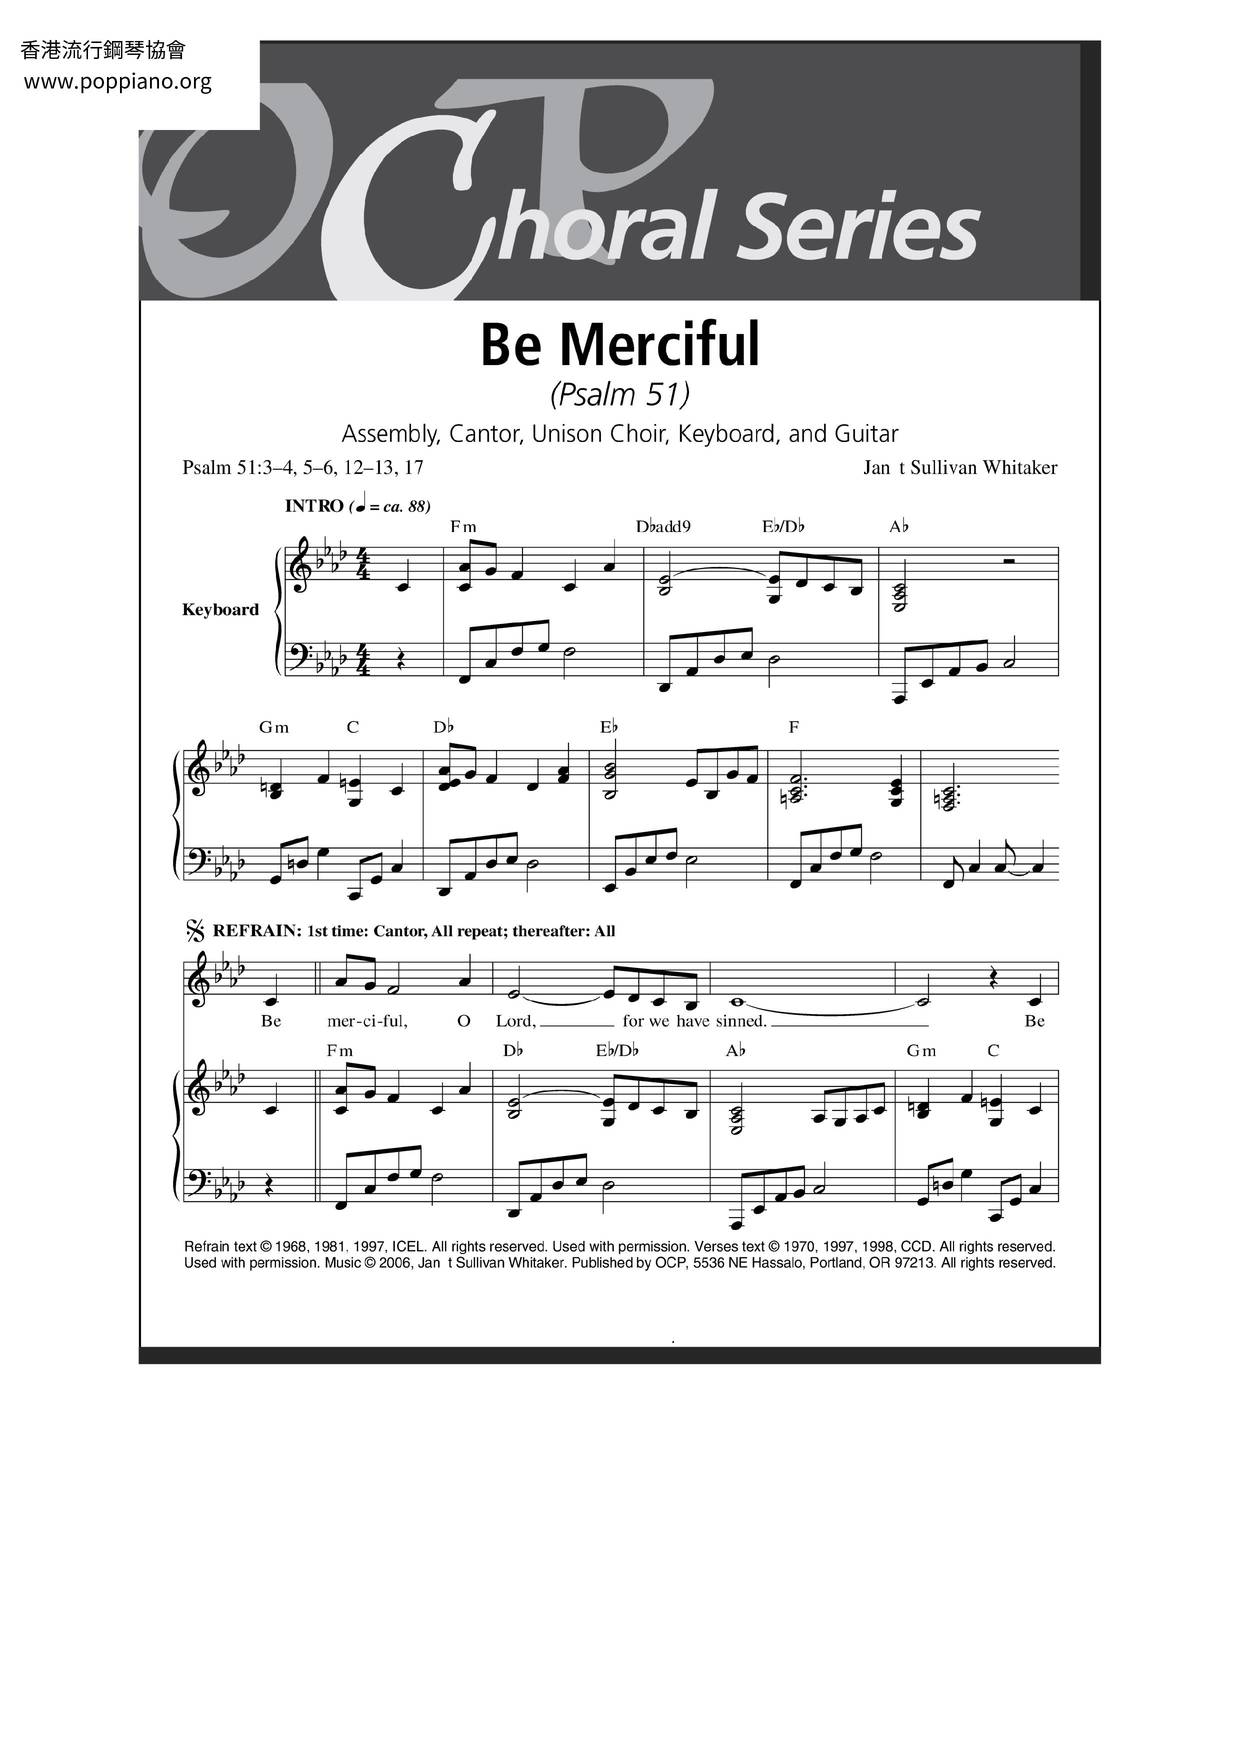 Be Merciful (Psalm 51) Score